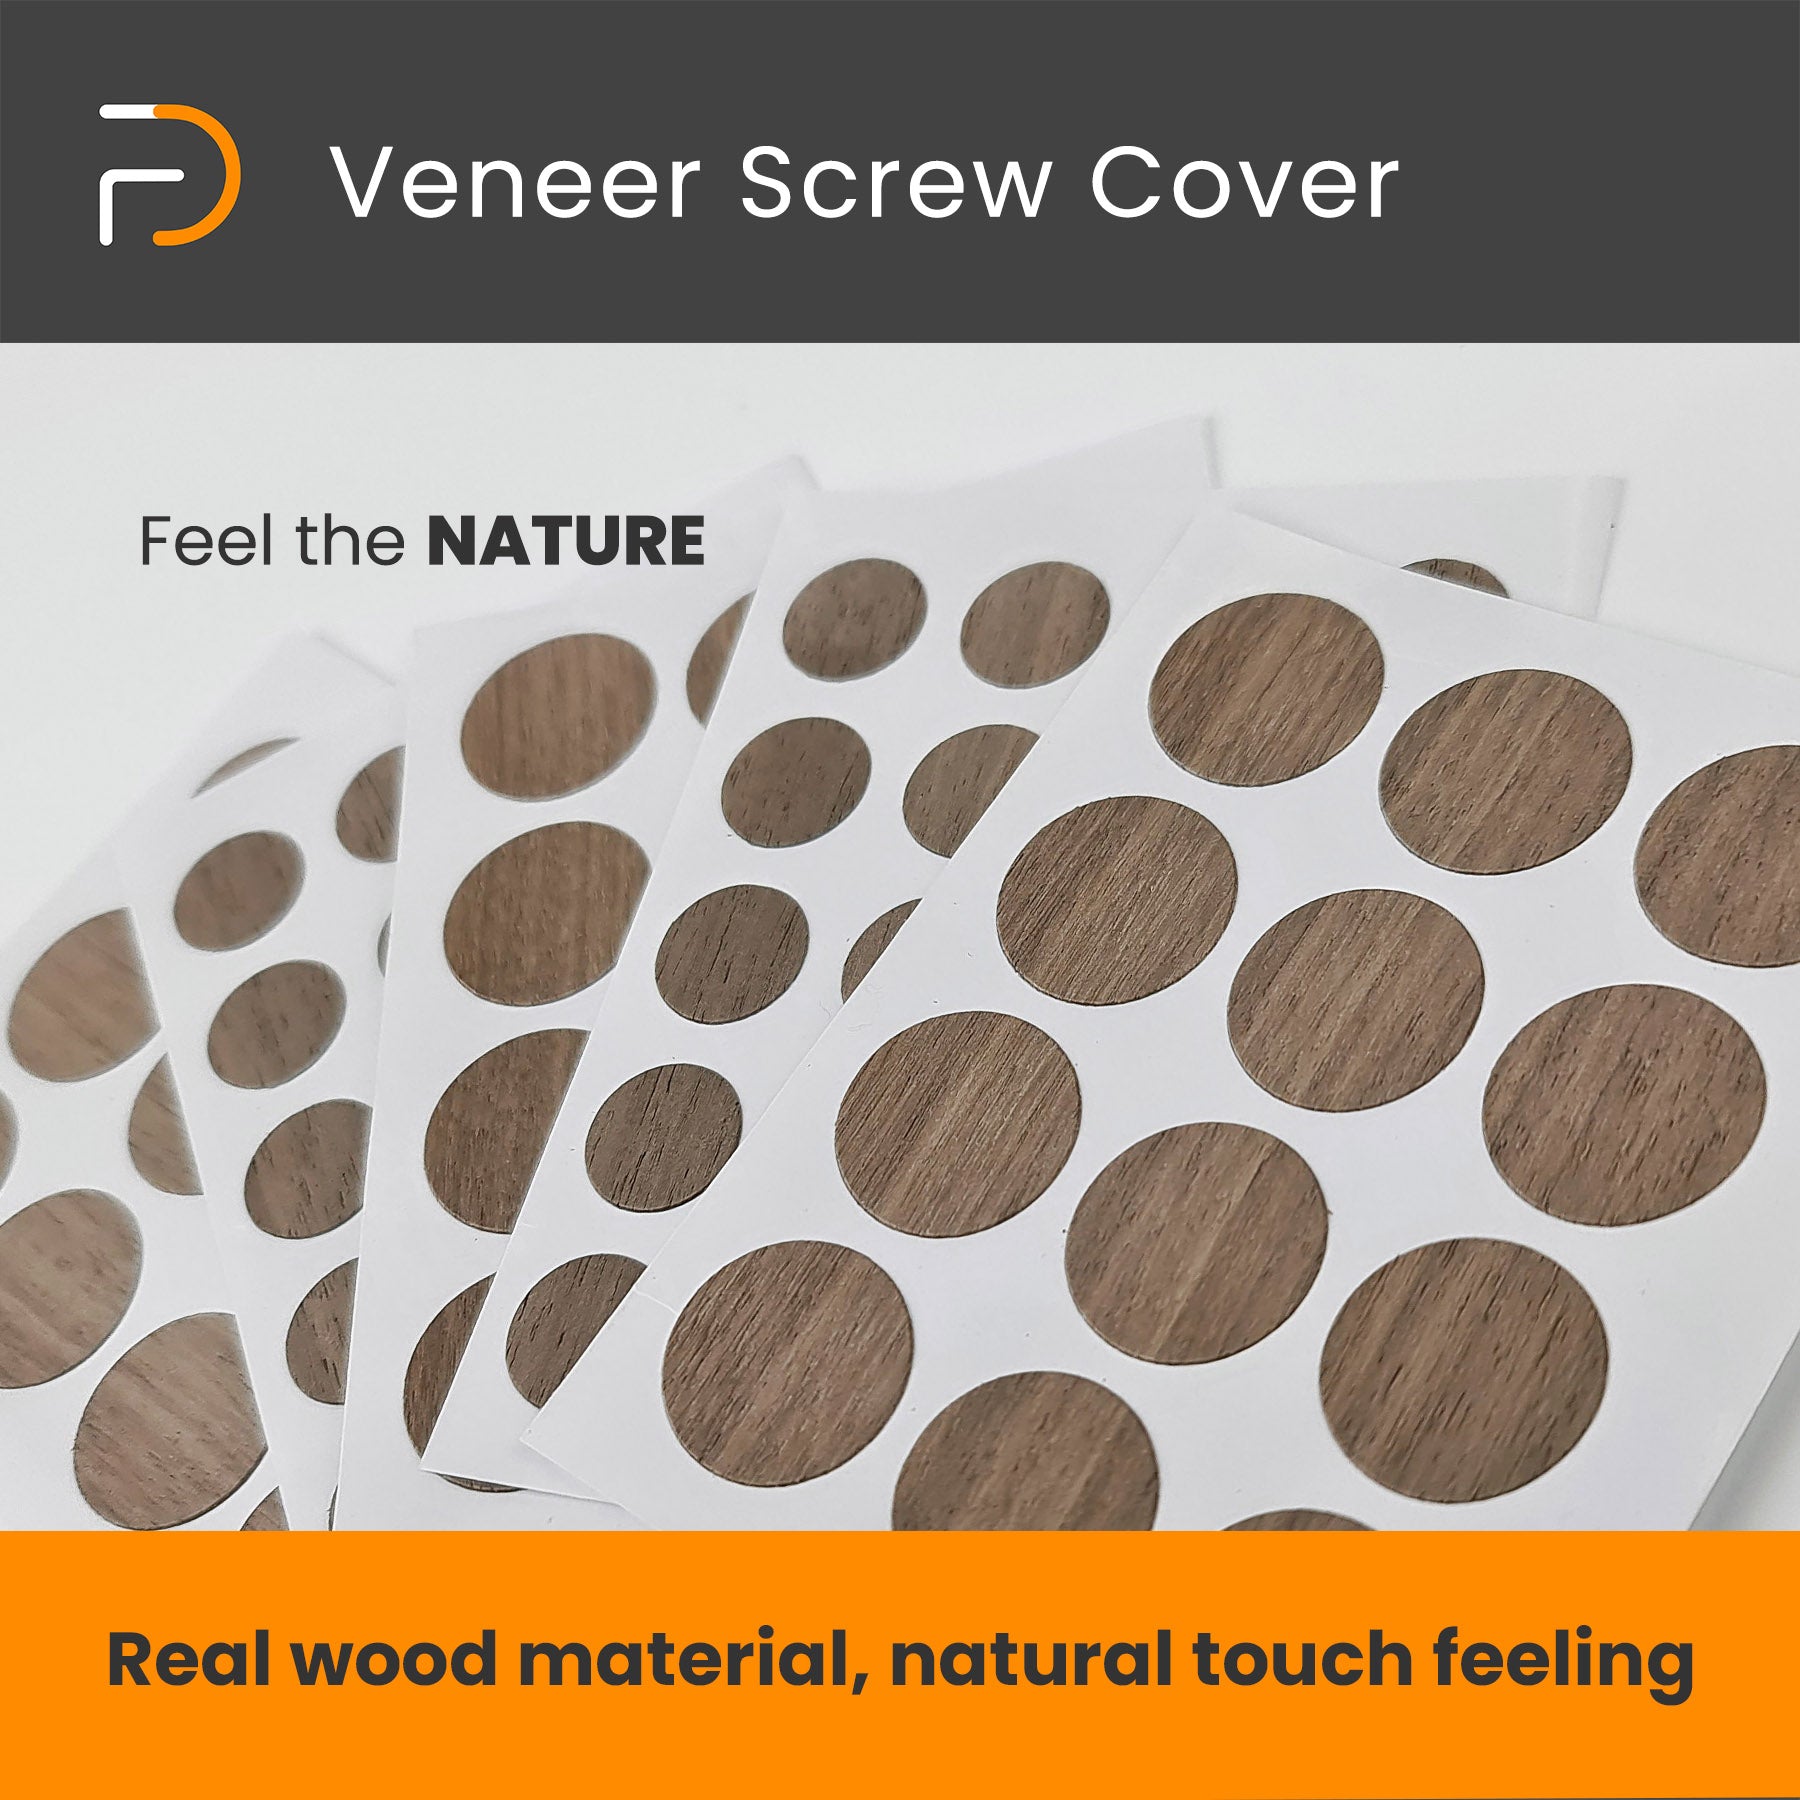 Self-Adhesive Real Wood Veneer Screw Cover Caps - Walnut